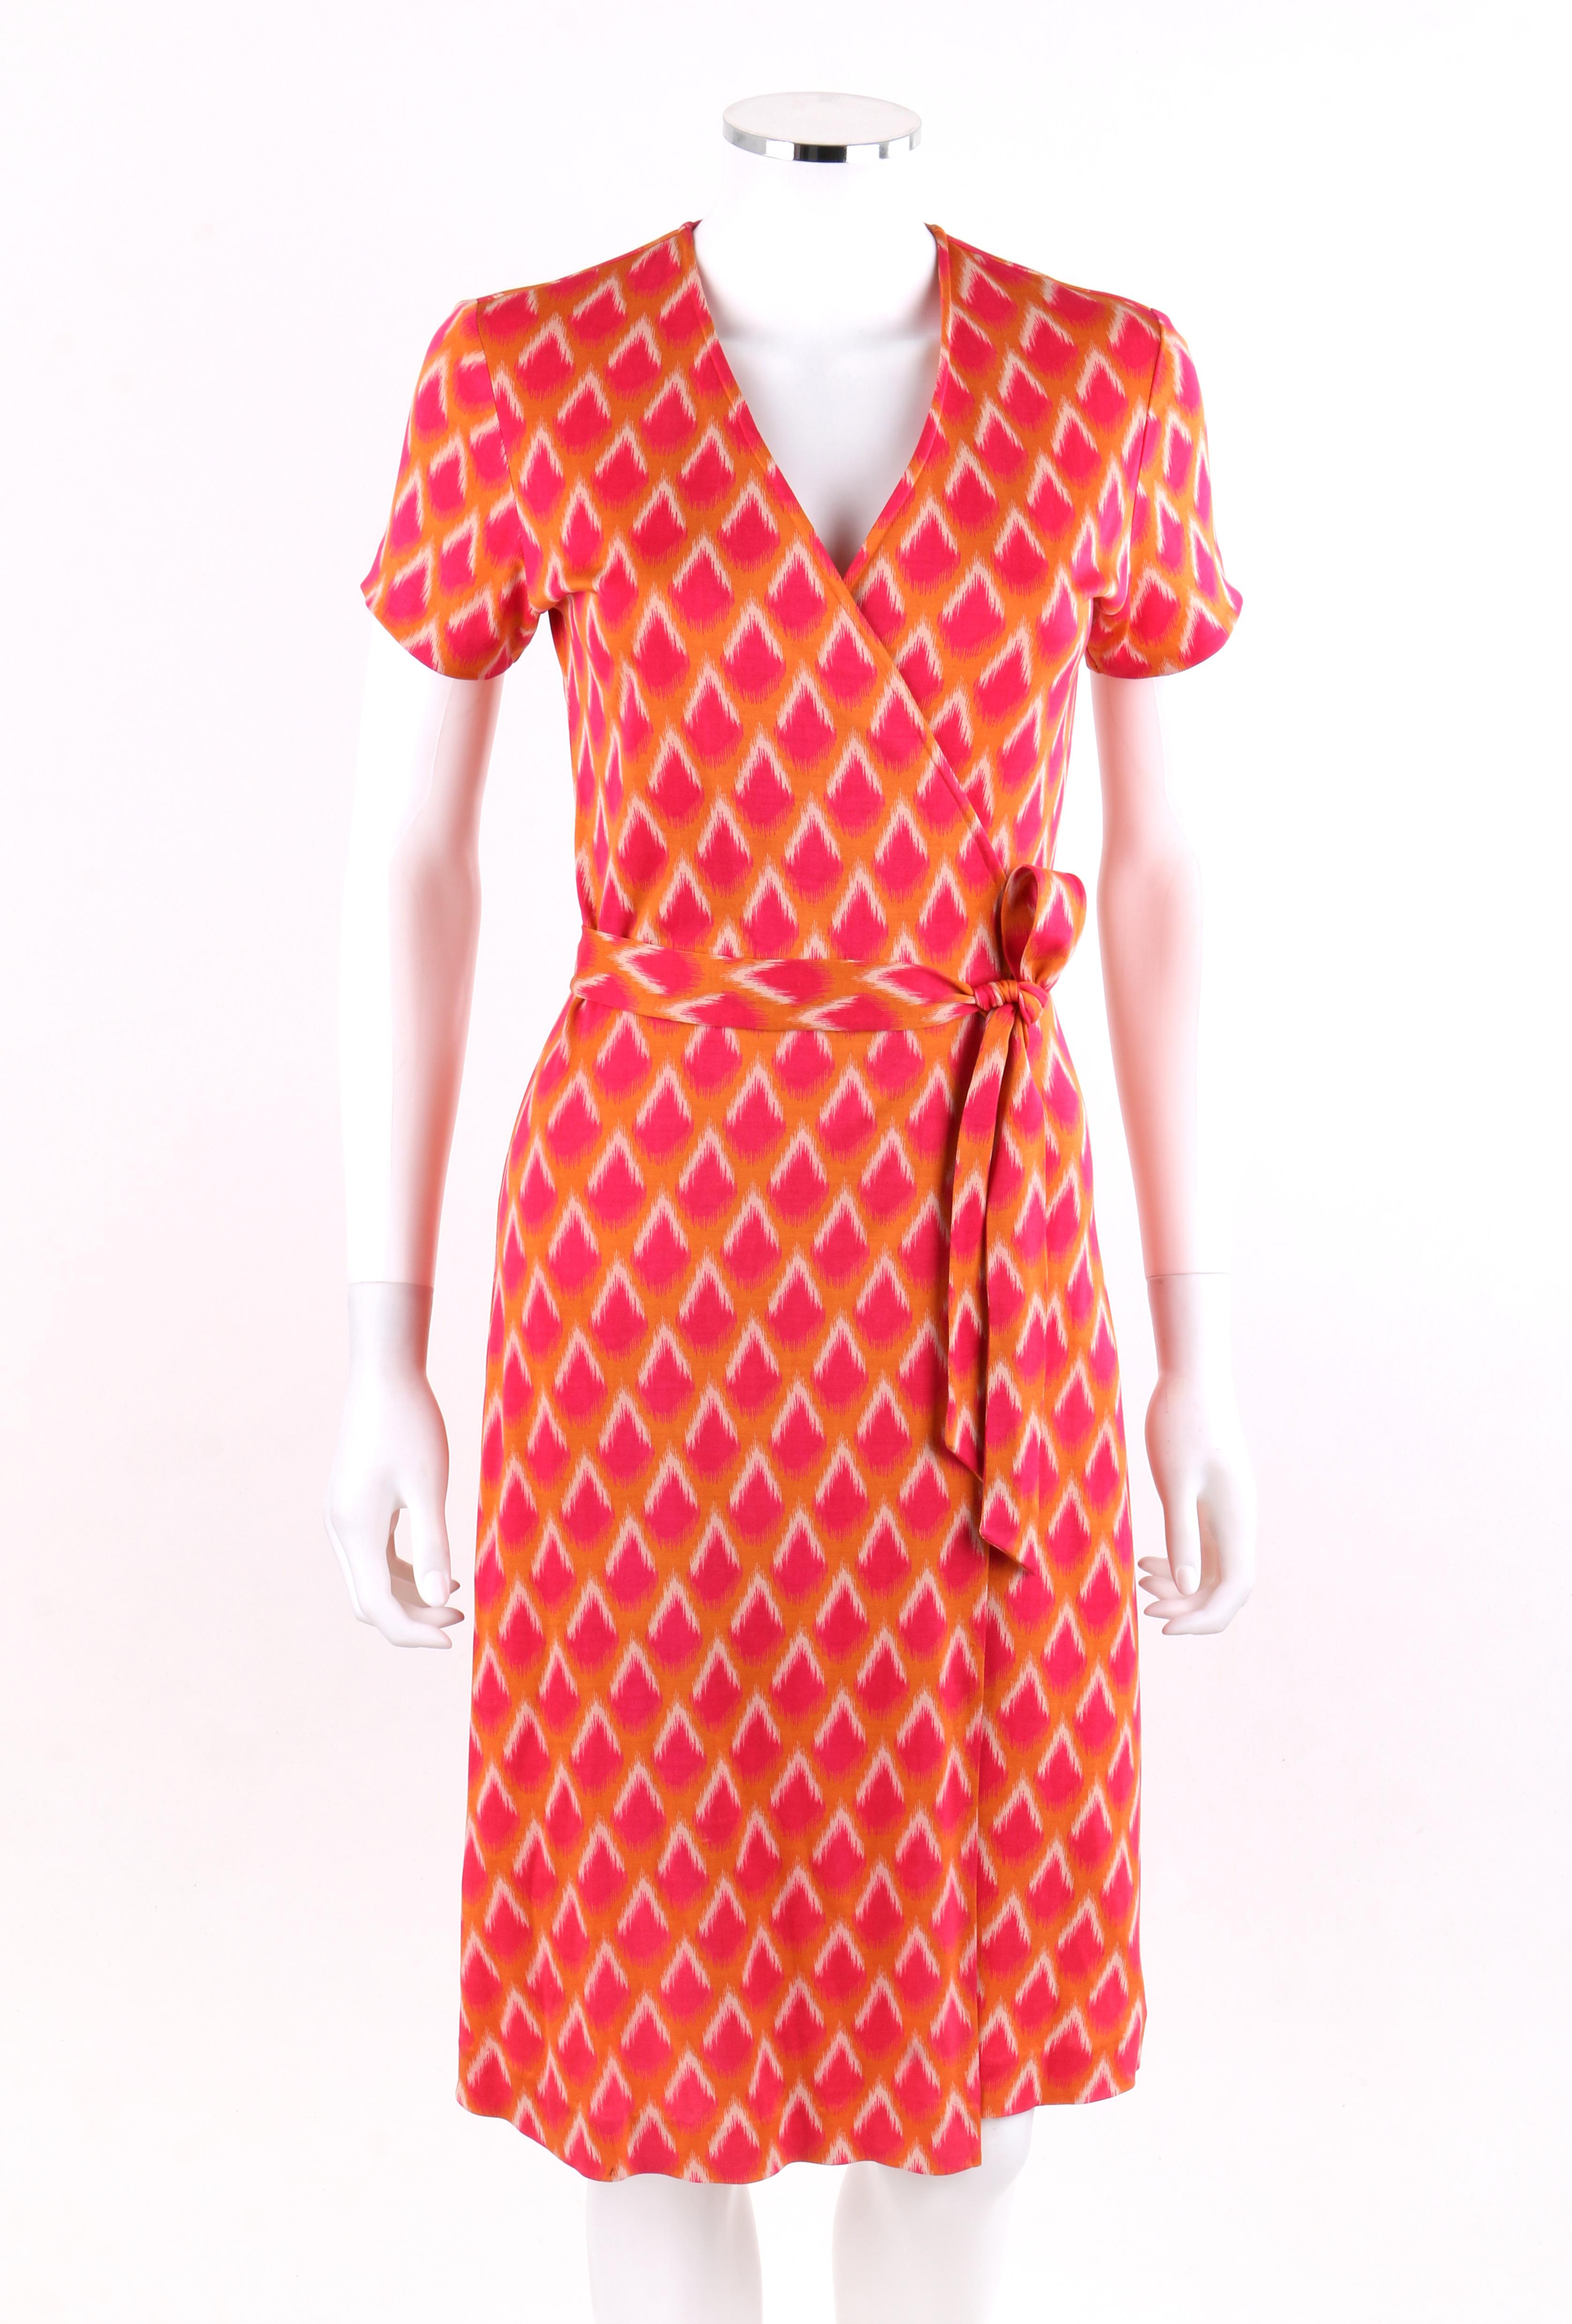 diane von furstenberg dionise abstract silk dress